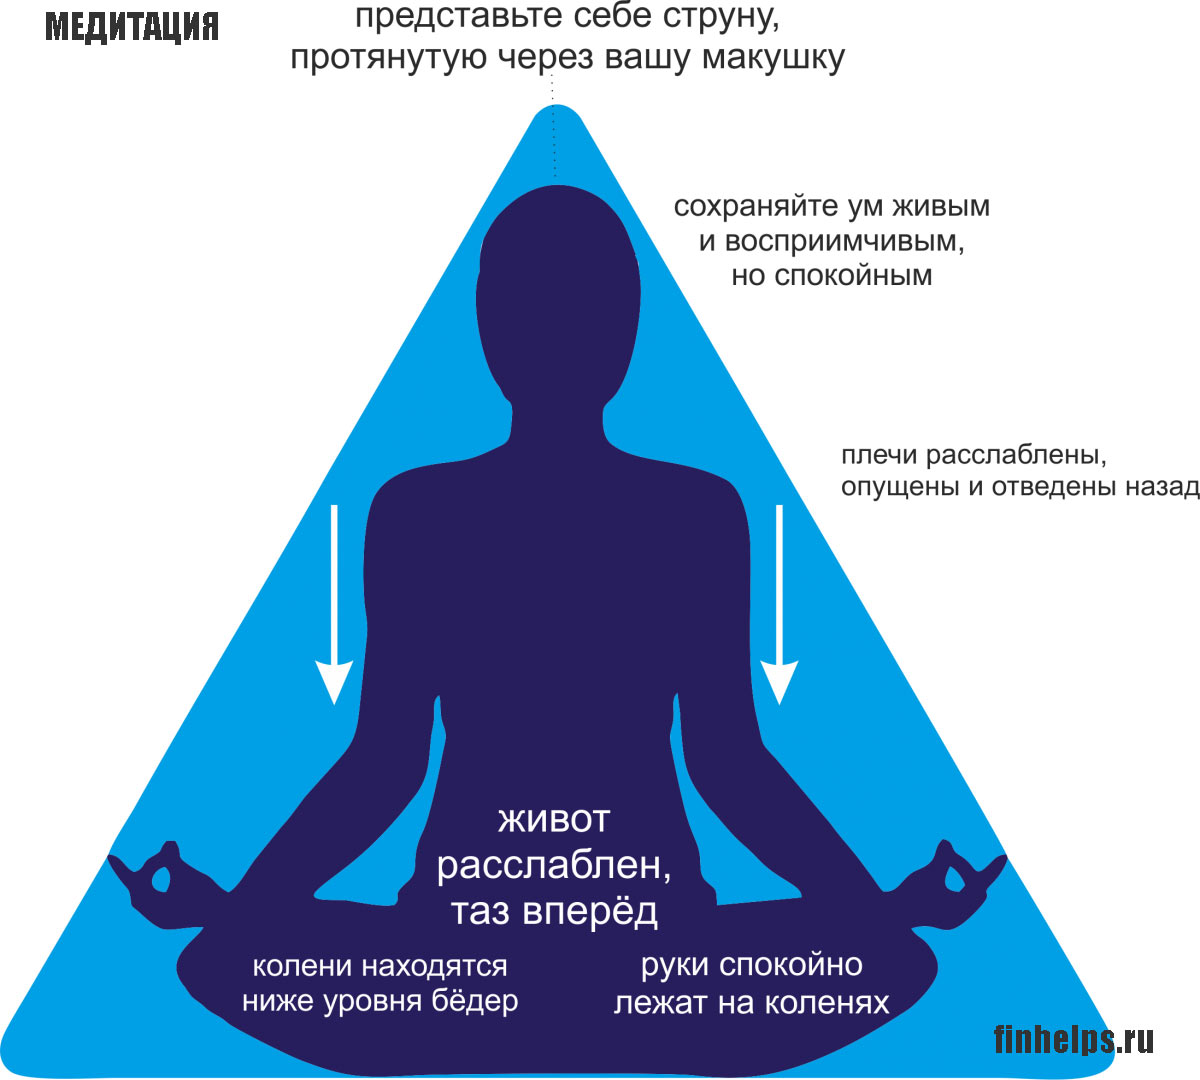 Почему медитируют. Правильная медитация. Как правильно медитировать. Формы и методы медитации. Медитация для начинающих.